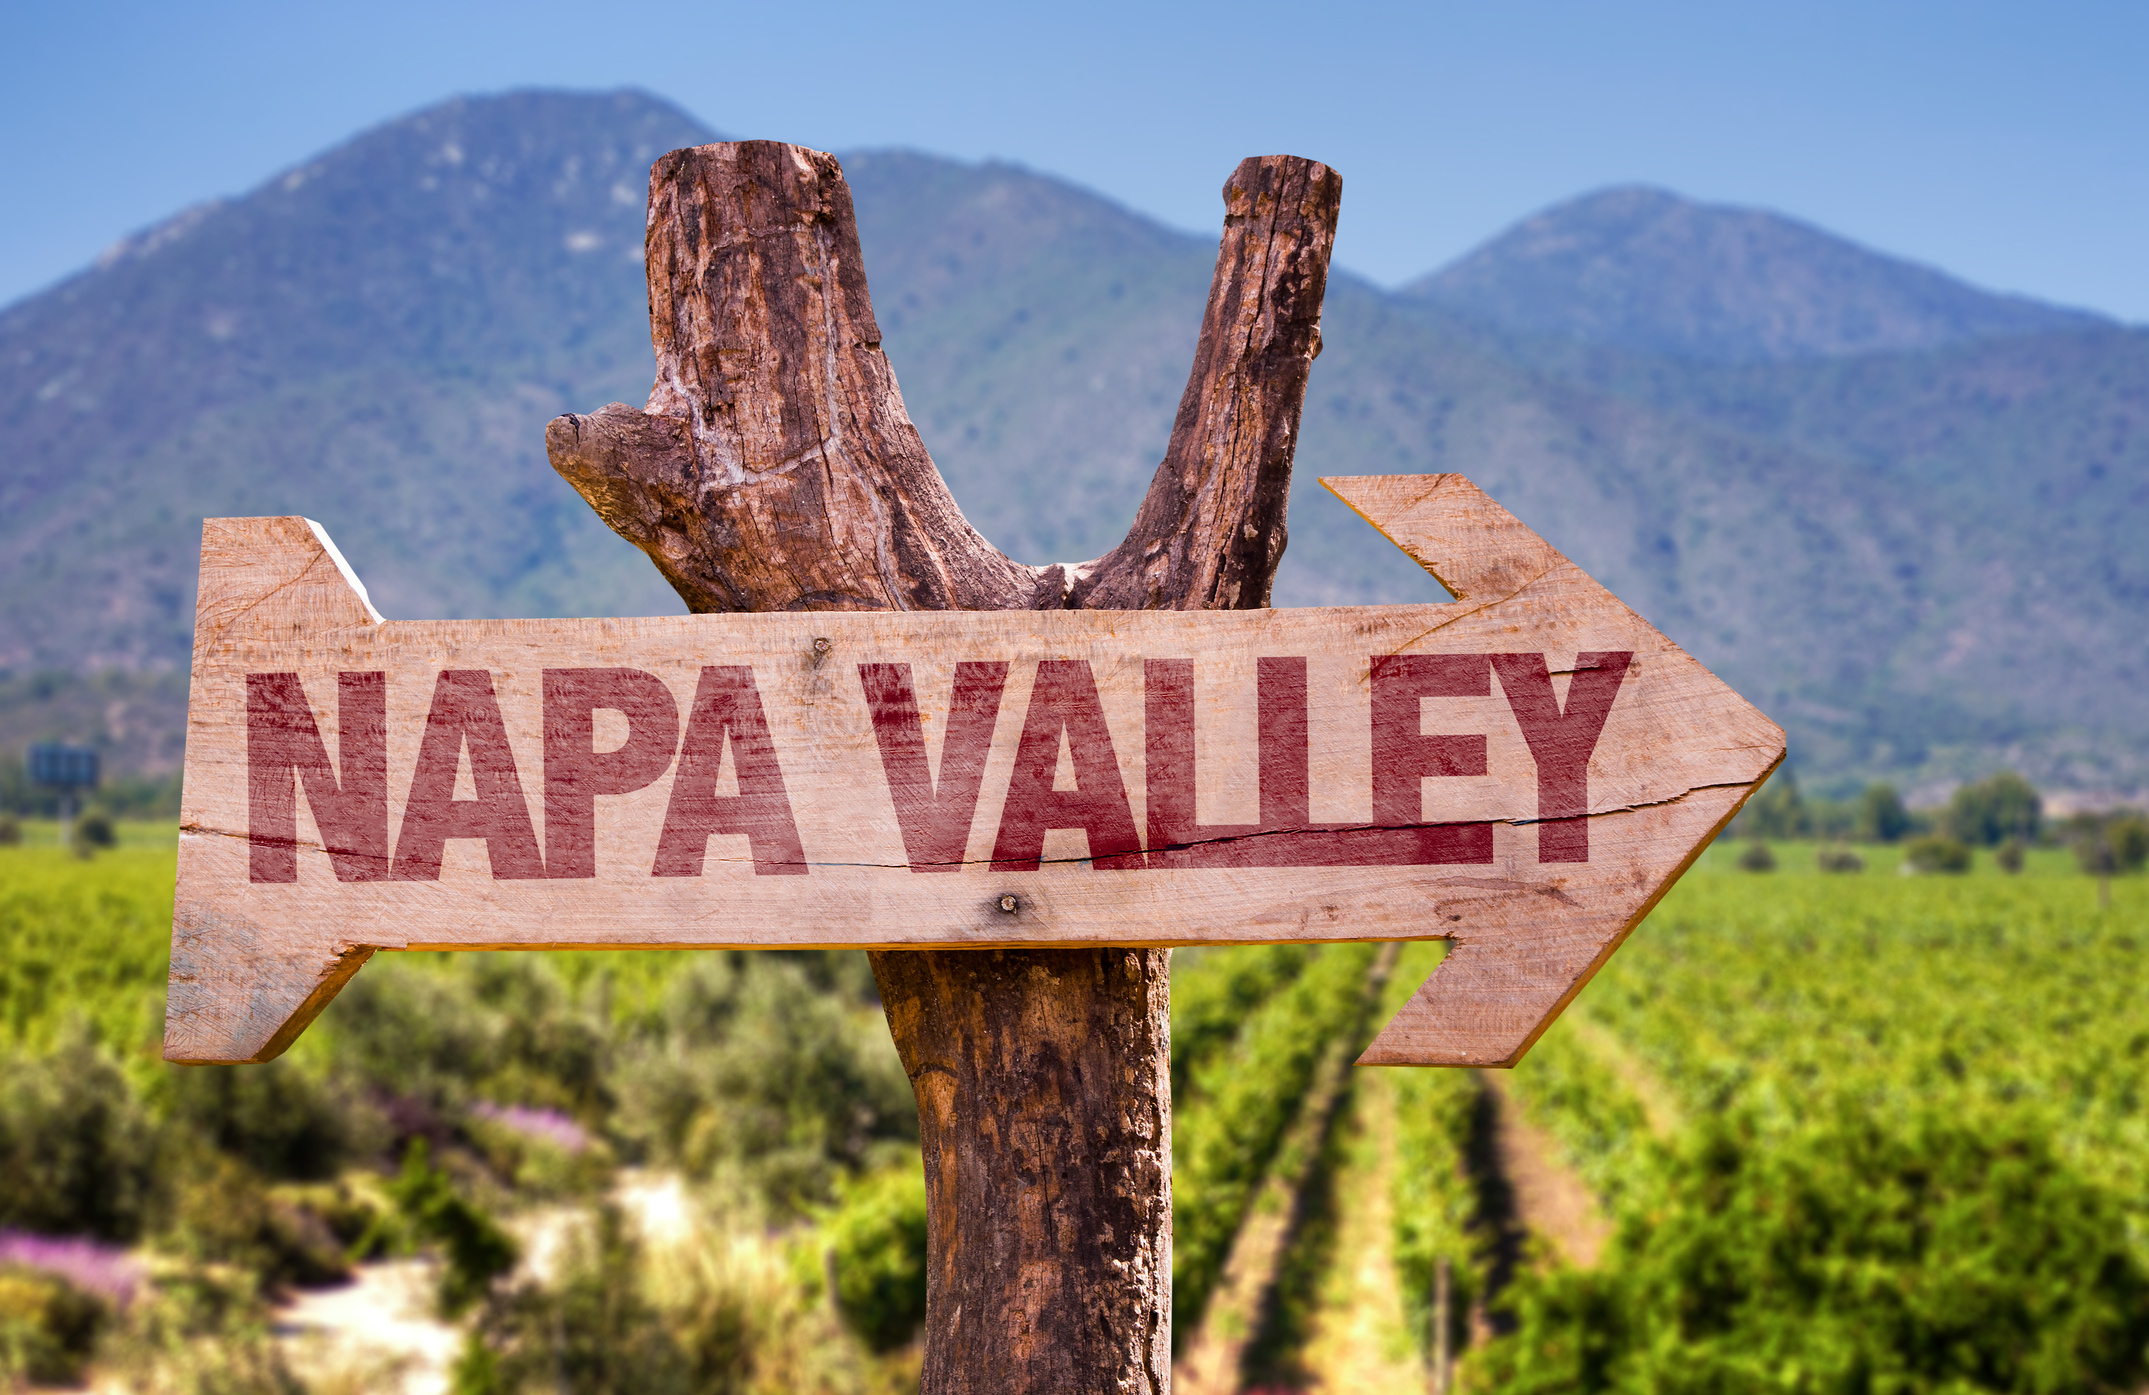 Wineries in Napa, Wine tasting experience, Wine enthusiasts, Vineyard views, 2150x1400 HD Desktop